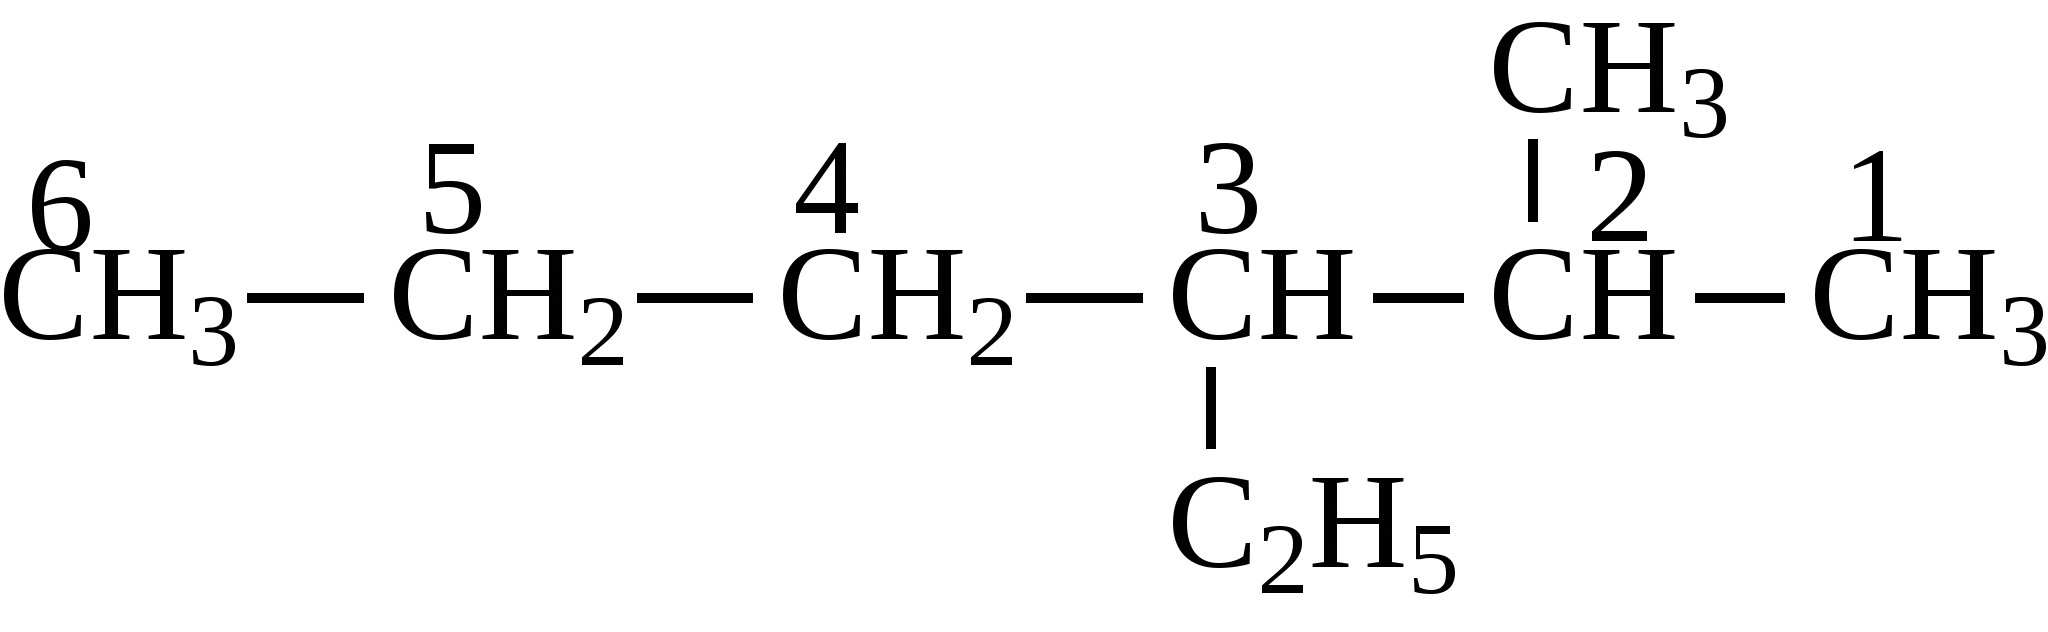 2 3 этил гексан. 2 Метил 3 этилгексан формула. 2 Метил 3 этилгексан структурная формула. 2 Метил 3 этил гексан структурная формула. 2 Метил 2 этилгексан.